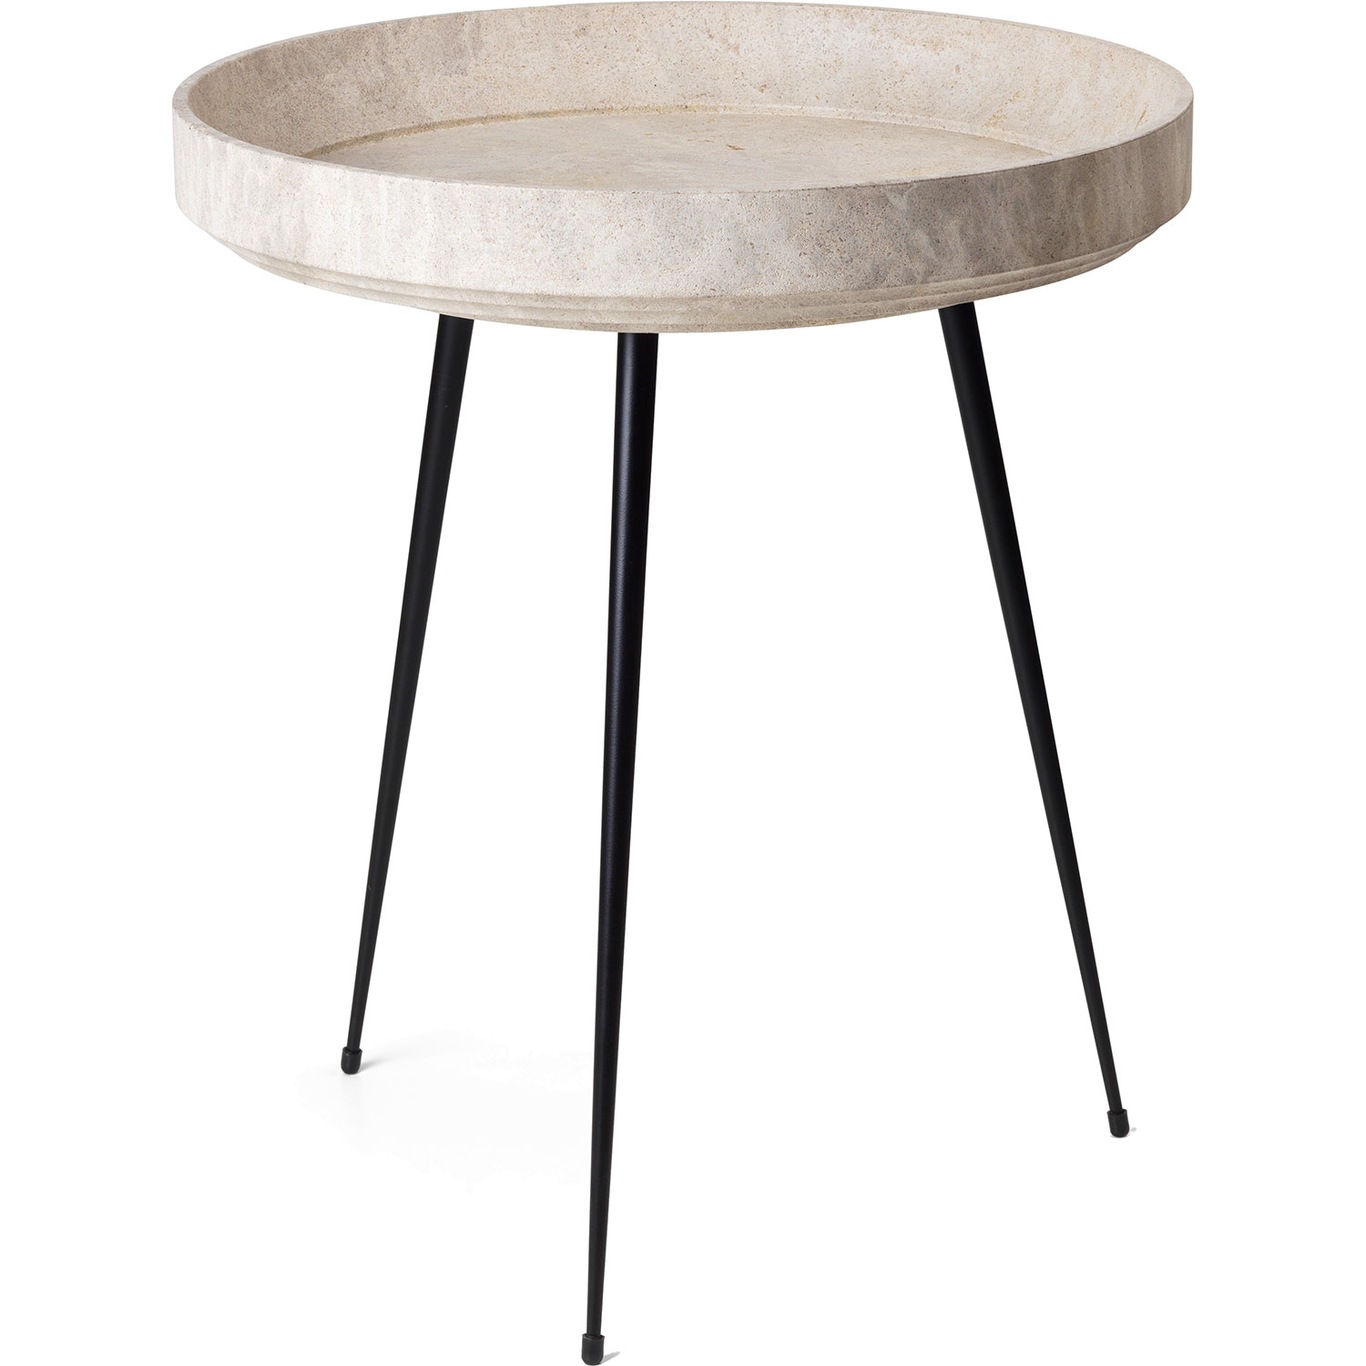 Bowl Sofabord Medium Ø 46 cm, Wood Waste Grey